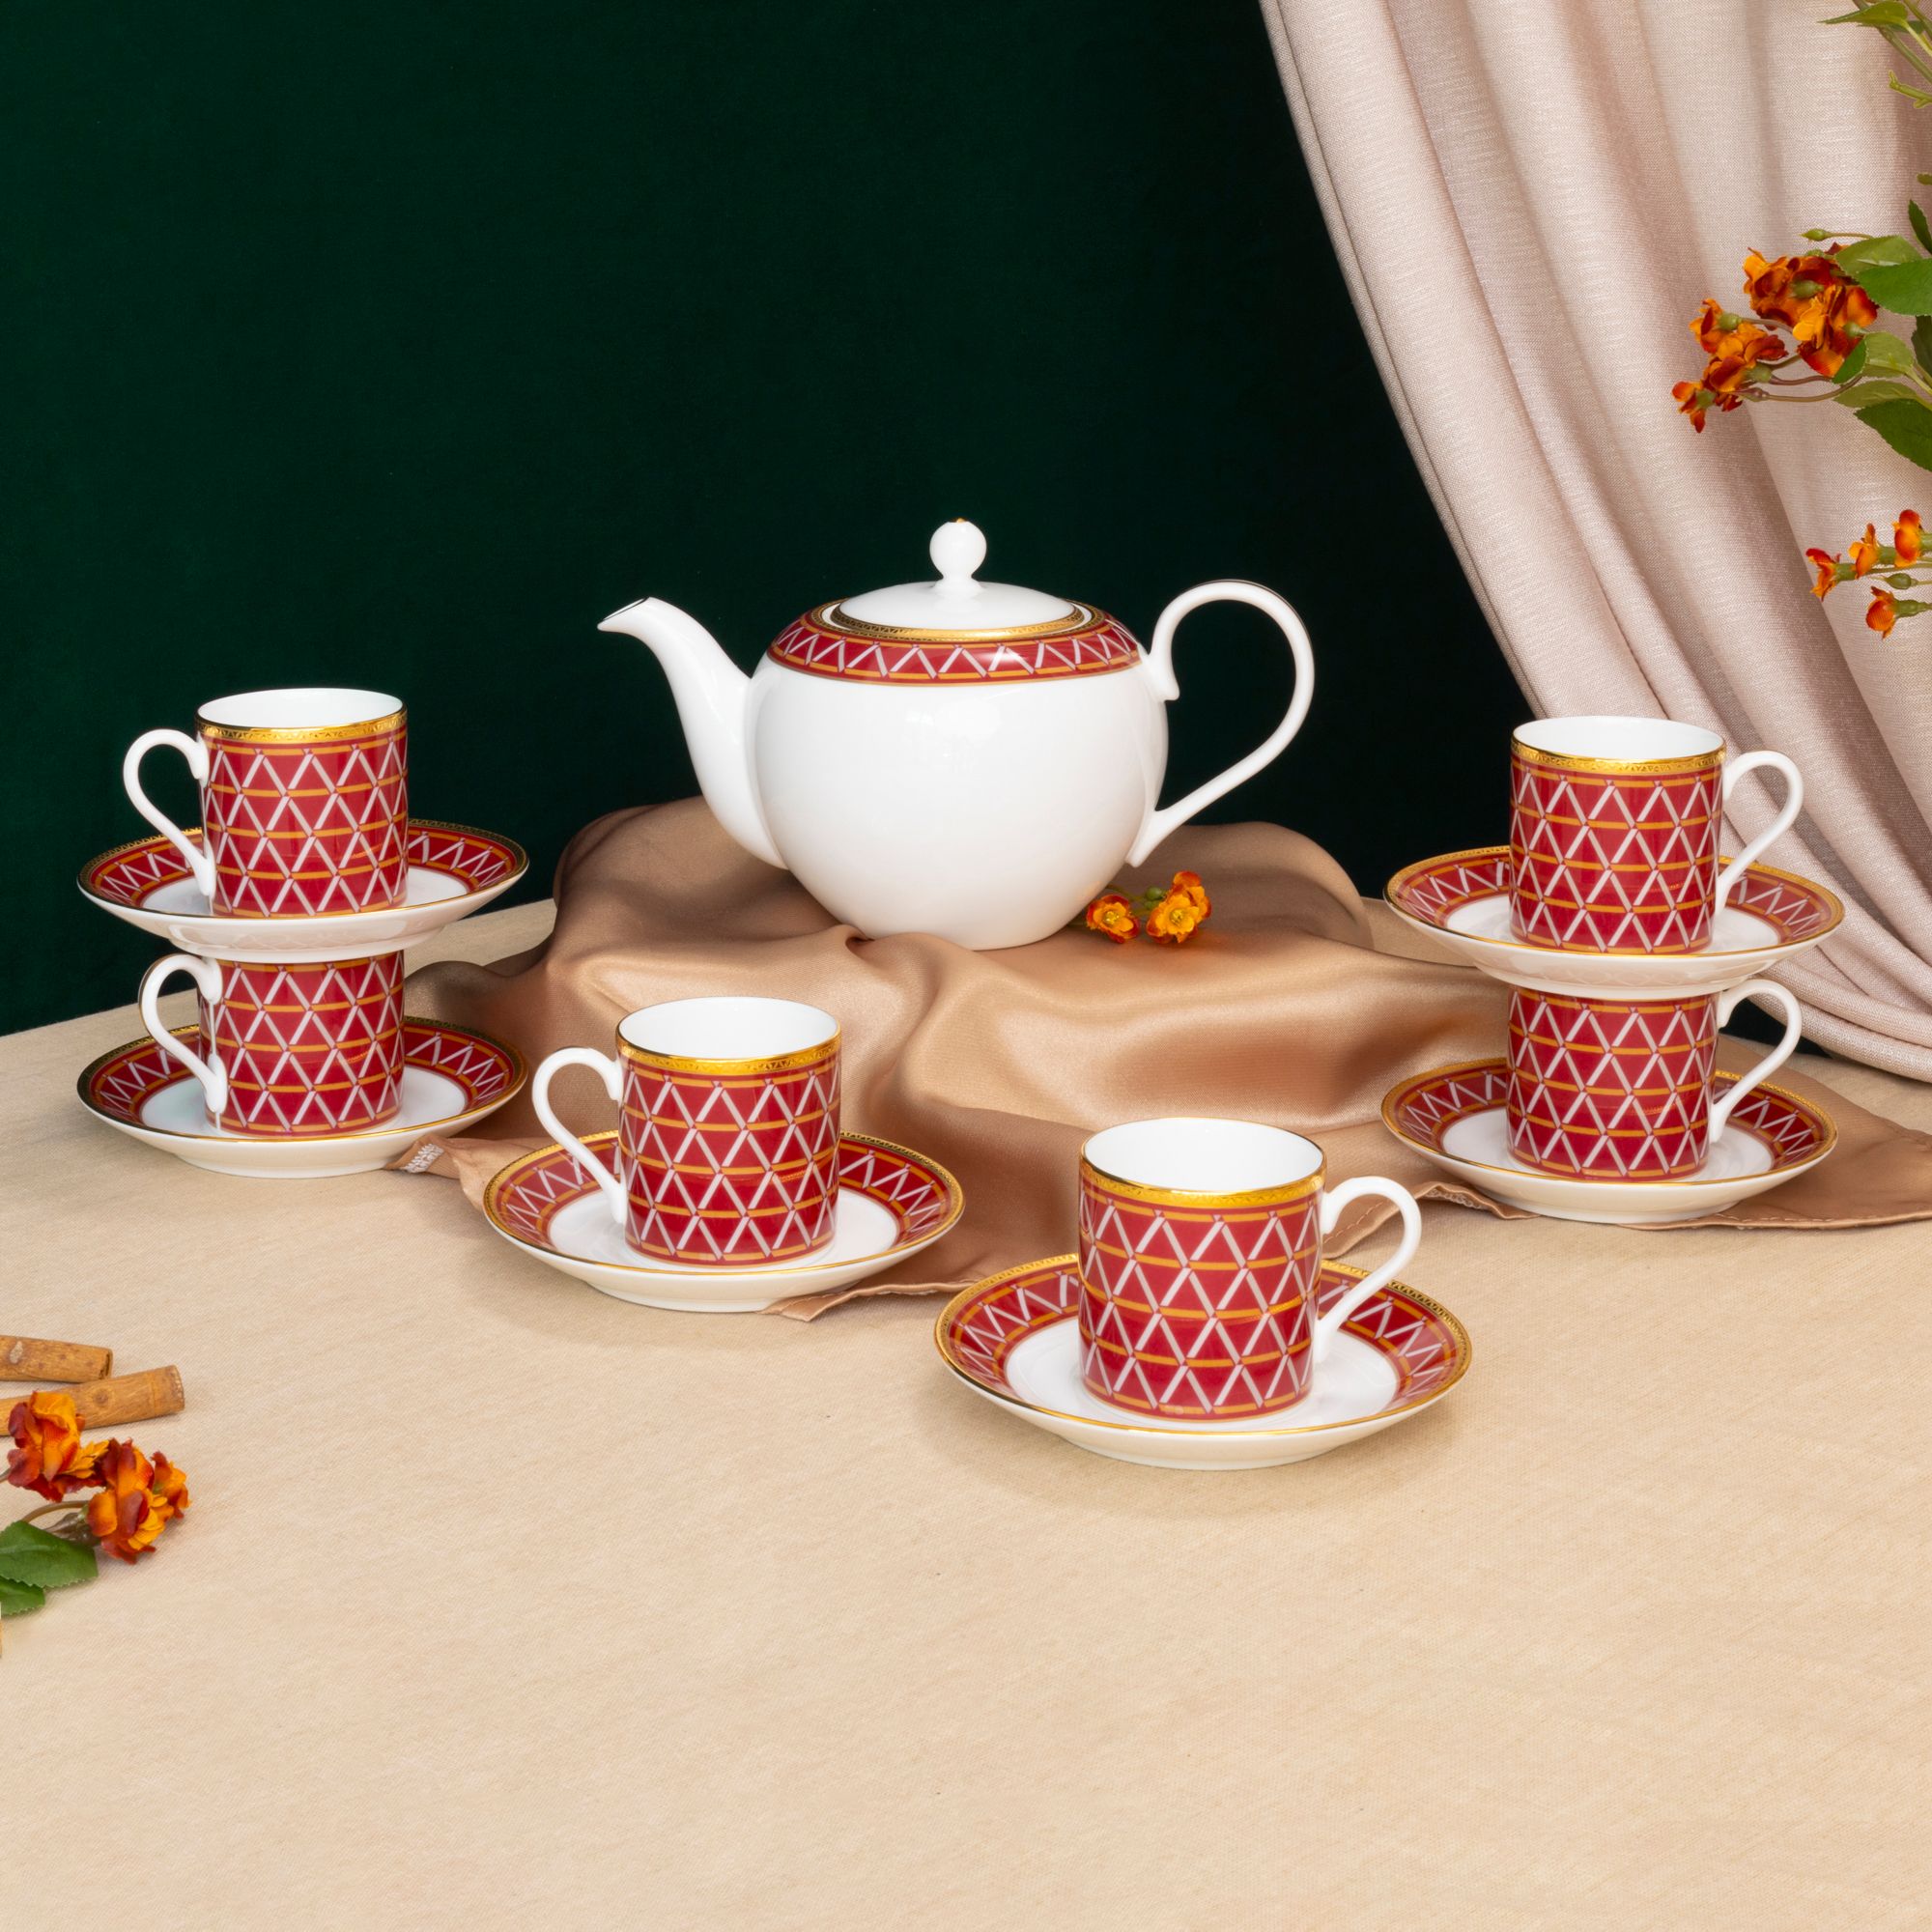  Bộ ấm chén uống trà 13 món (ấm nhỏ 650ml) sứ xương cao cấp | Crochet 4966L-T014S 